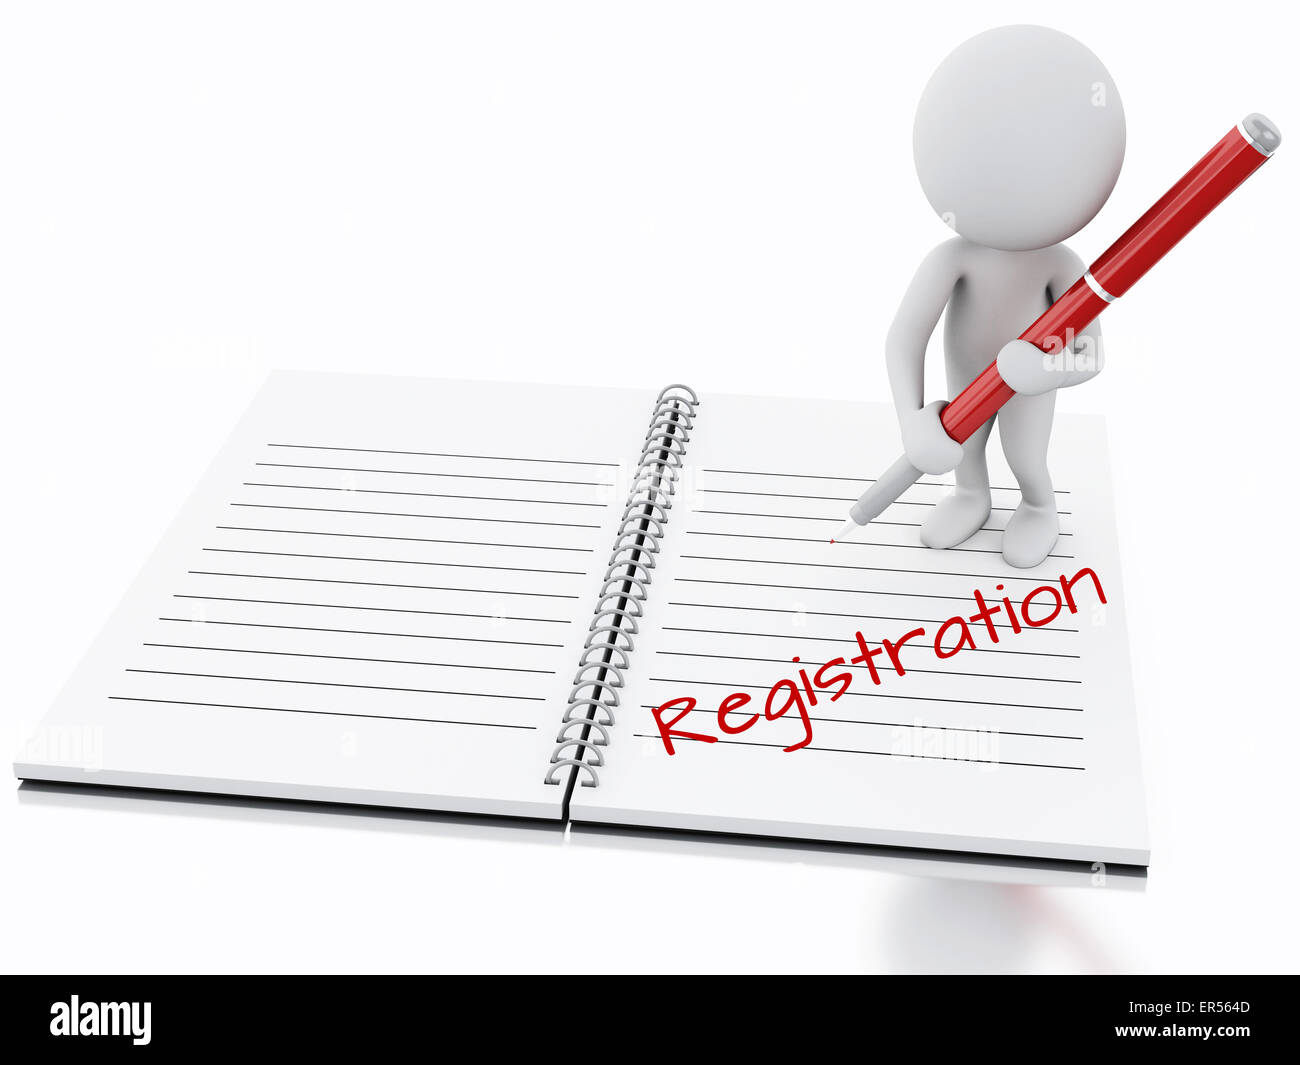 Details 200 background images for registration page